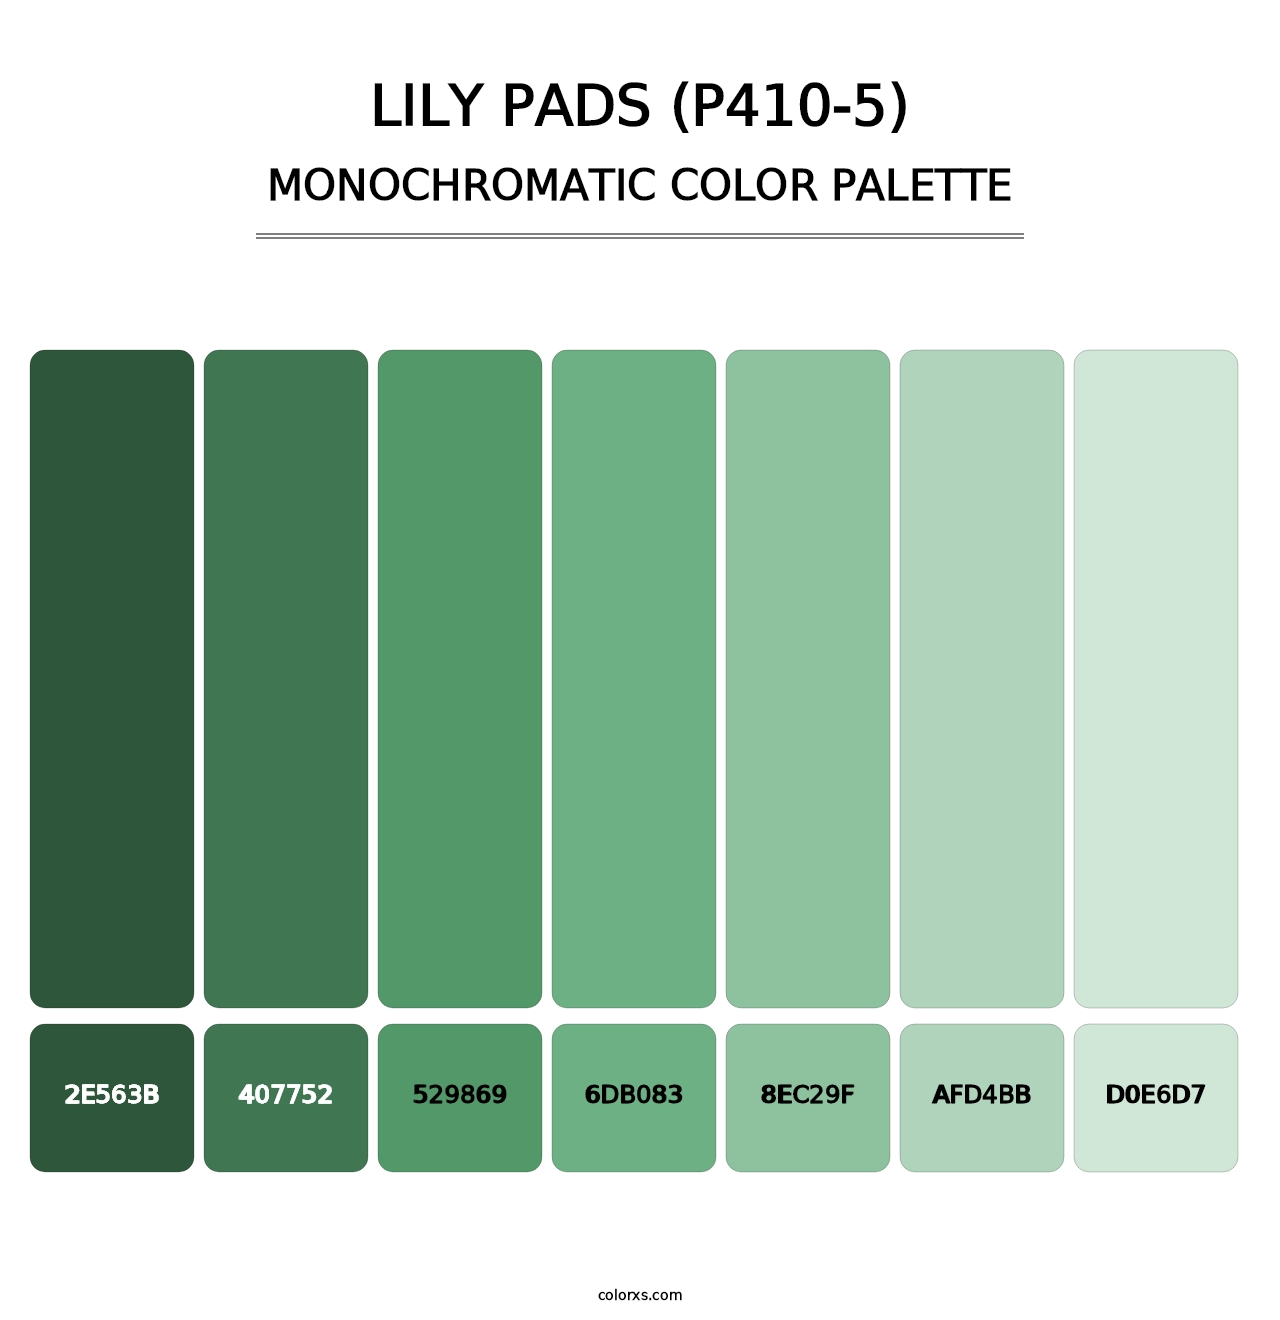 Lily Pads (P410-5) - Monochromatic Color Palette